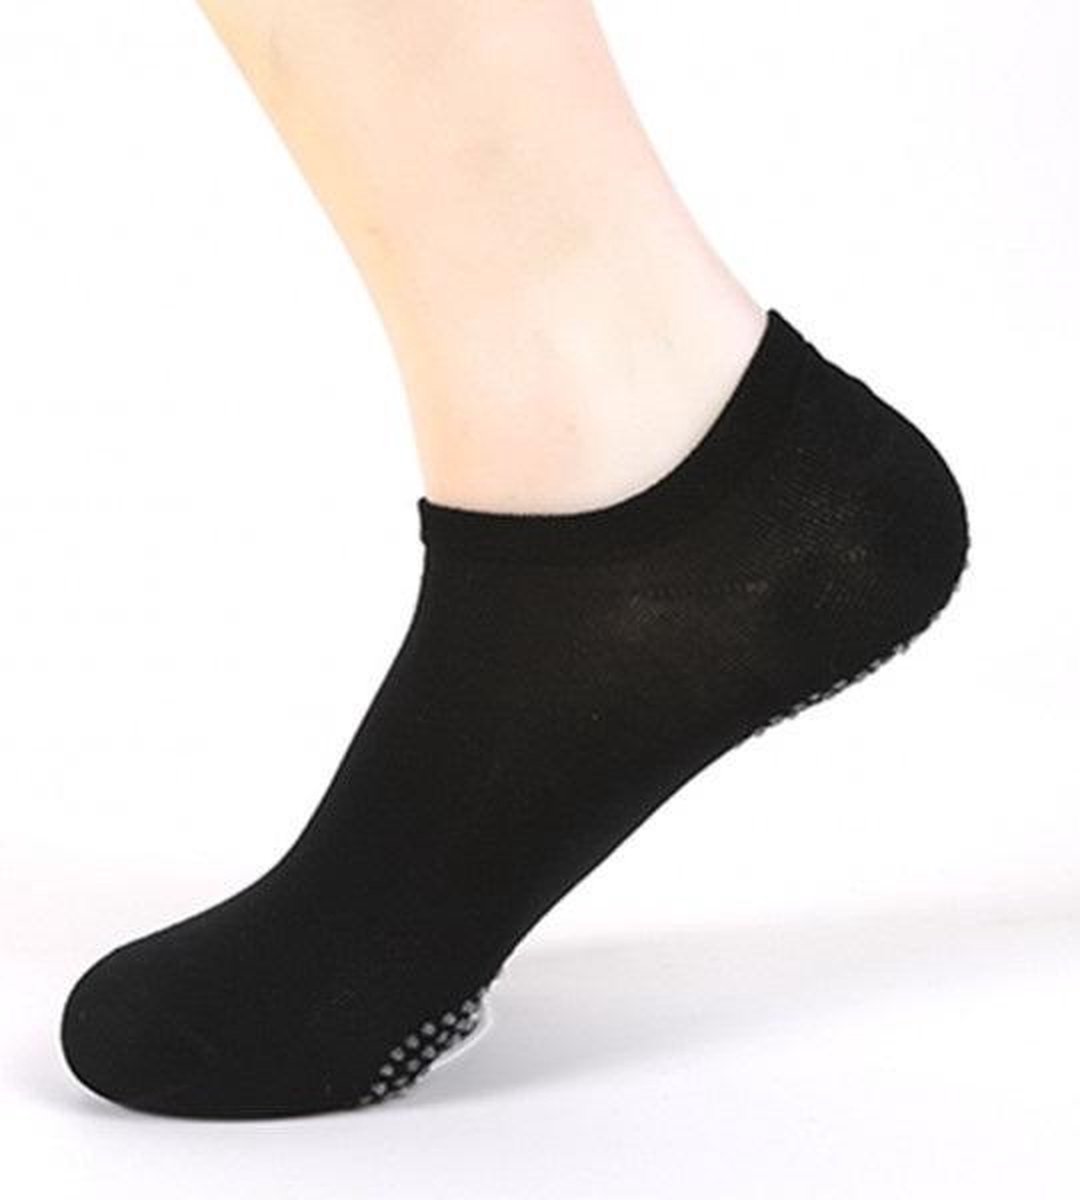 Socke|Sok|Extra Grip(Antislip)|Yoga Sokken|Pilates|(3 Paar)|